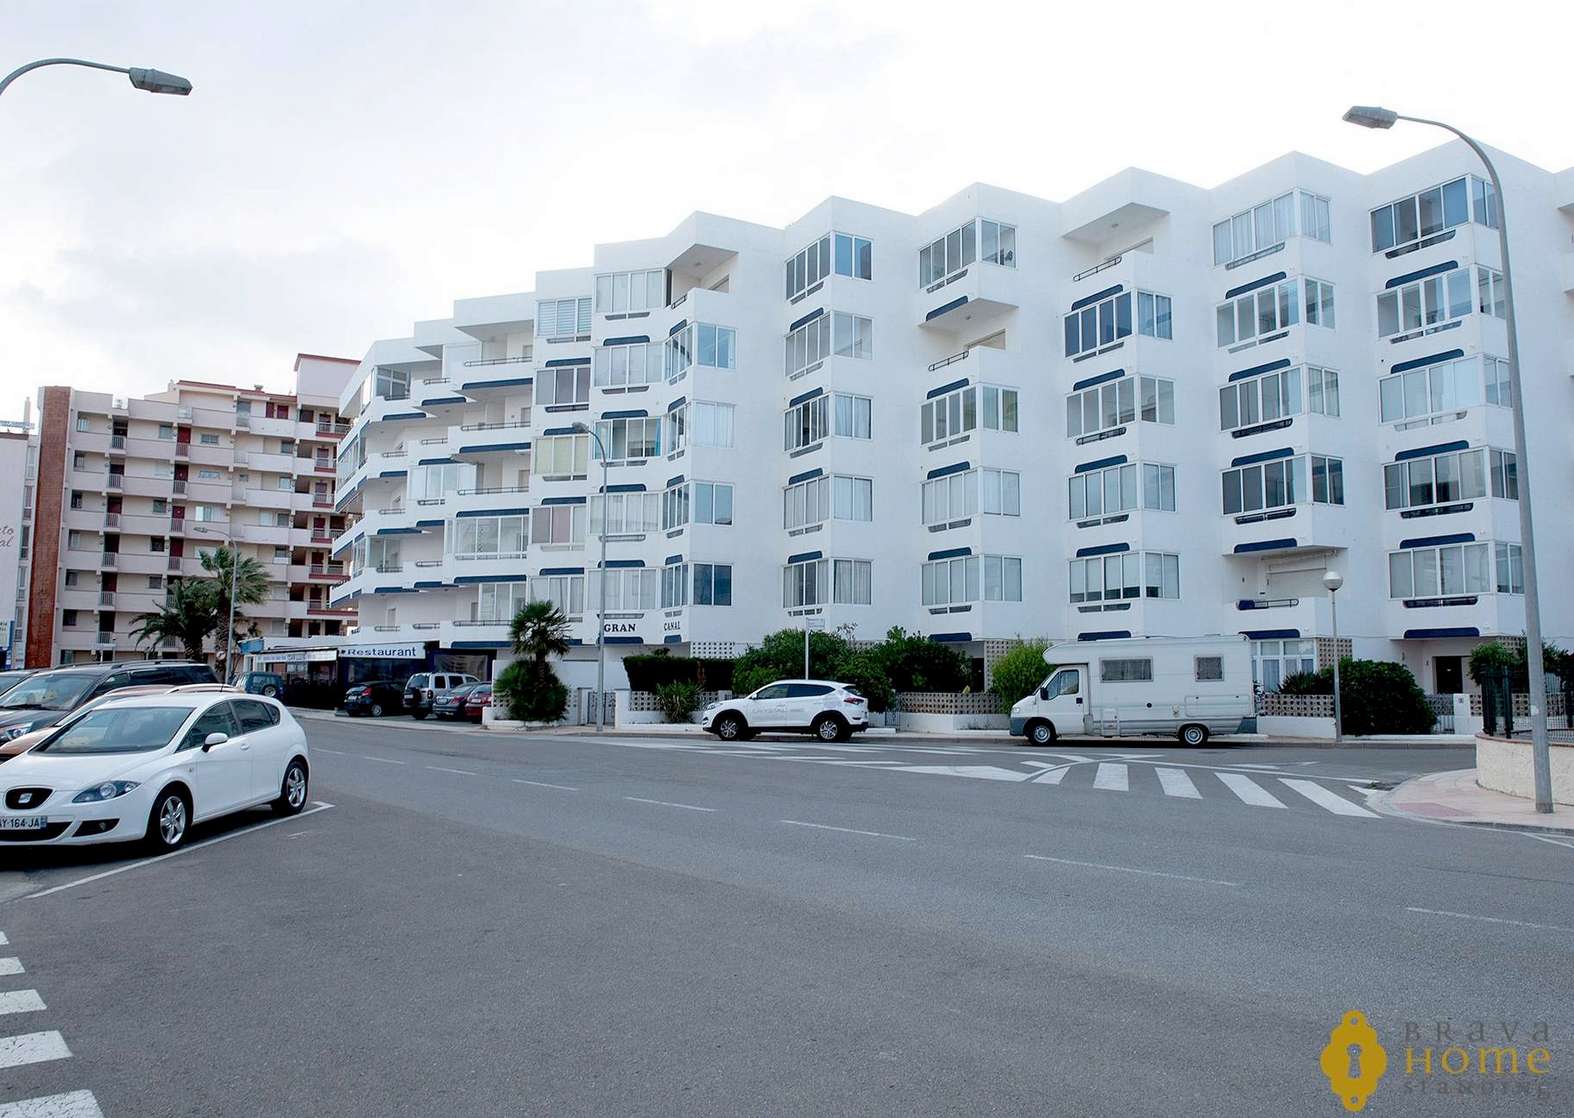 Bonic apartament amb vistes al mar, en venda a Roses - Santa Margarida